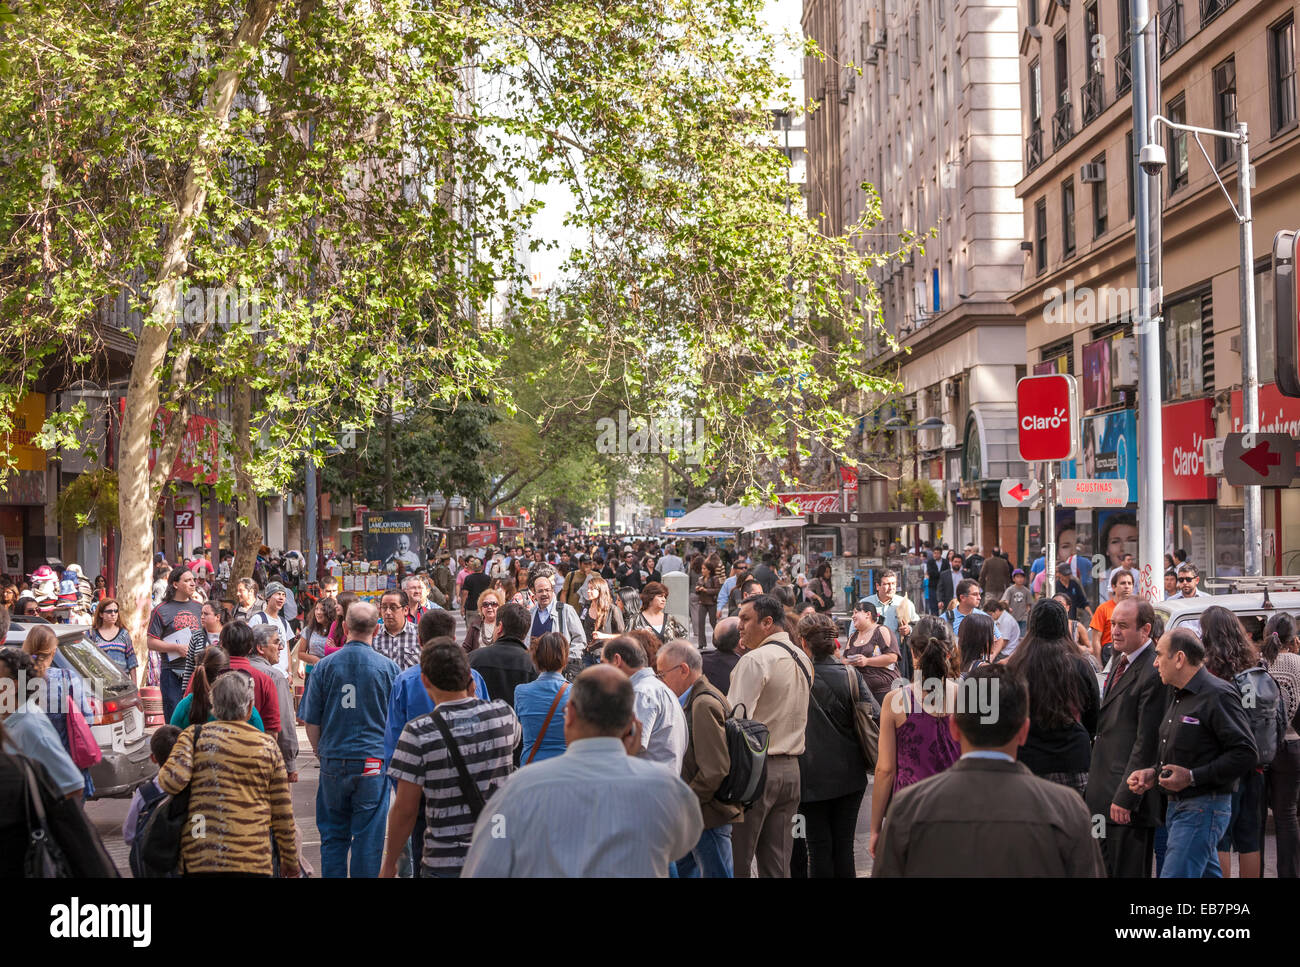 Santiago du Chili, le Paseo Ahumada. Des foules de gens, Shoppers, marcher parler dans la principale rue commerçante de Santiago du Chili. Banque D'Images